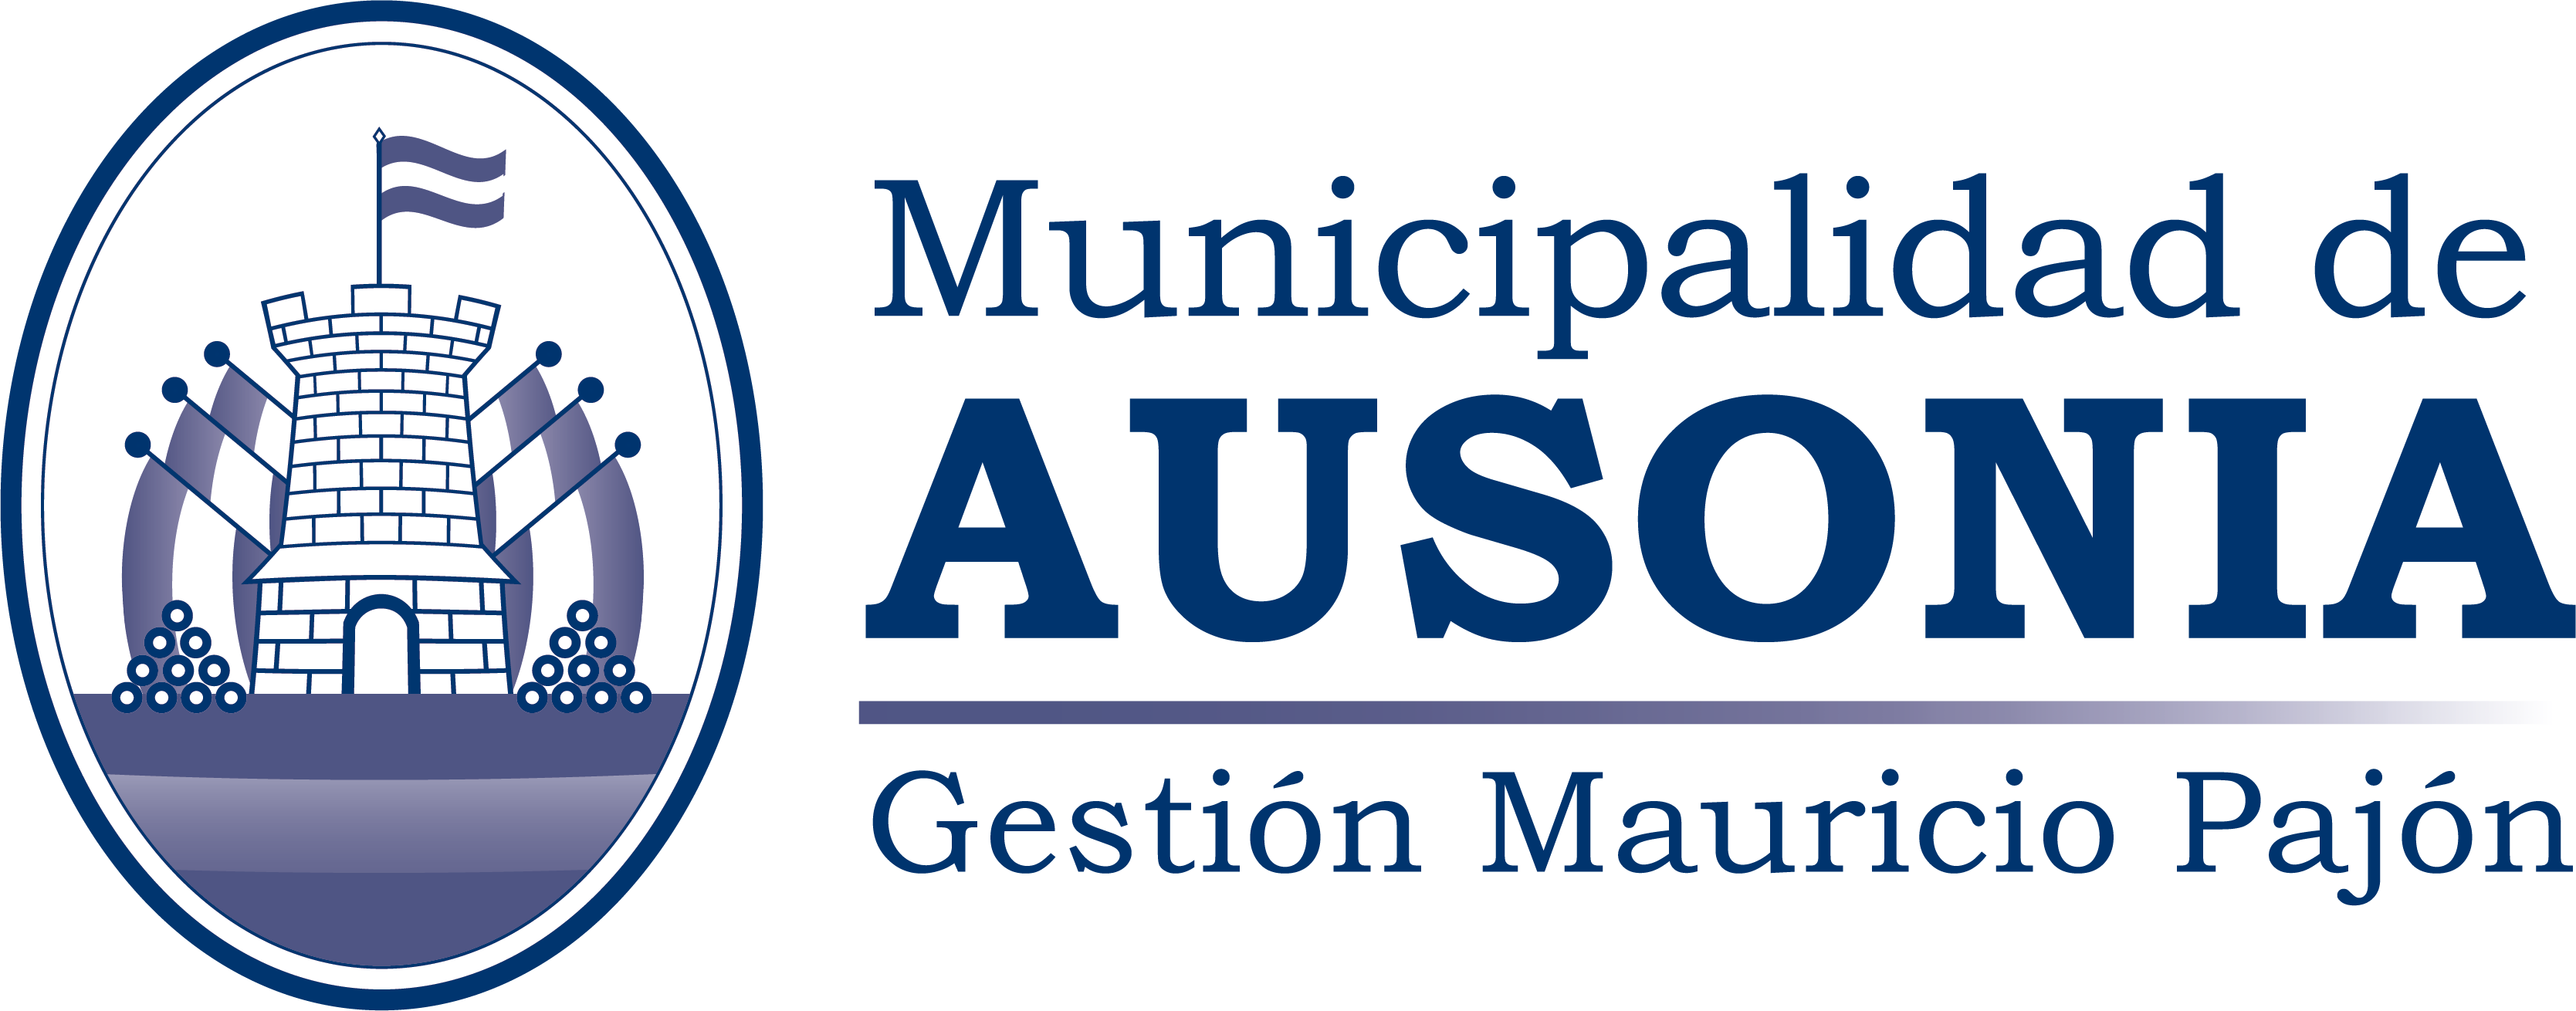 Municipalidad de Ausonia